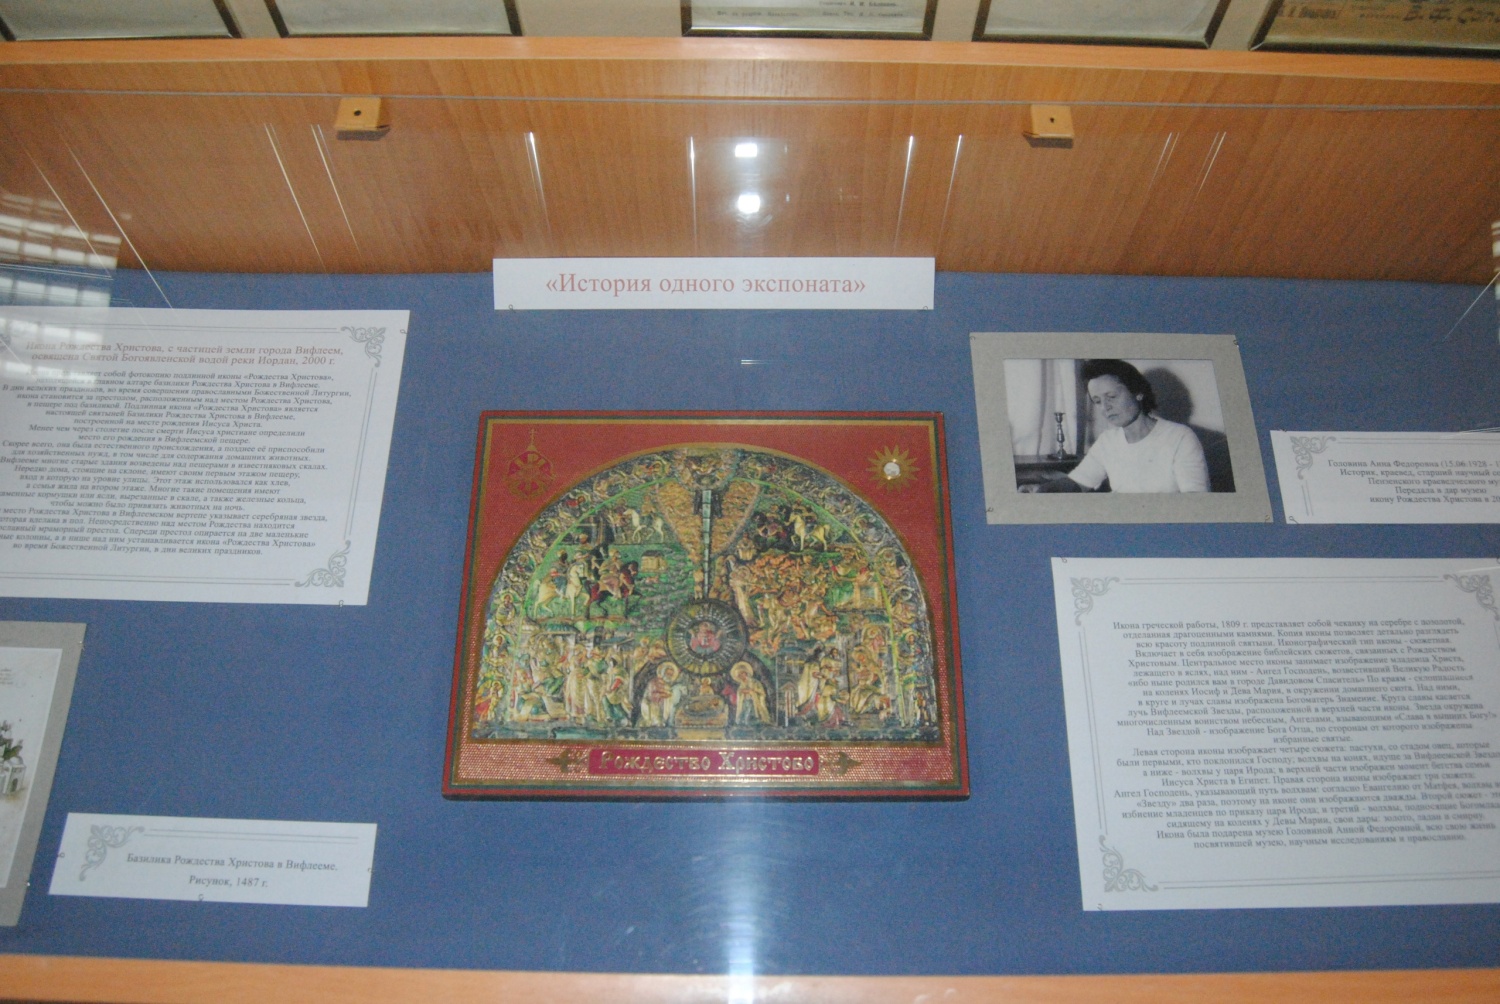 «Выставка одного экспоната» начала работу в Пензенском краеведческом музее